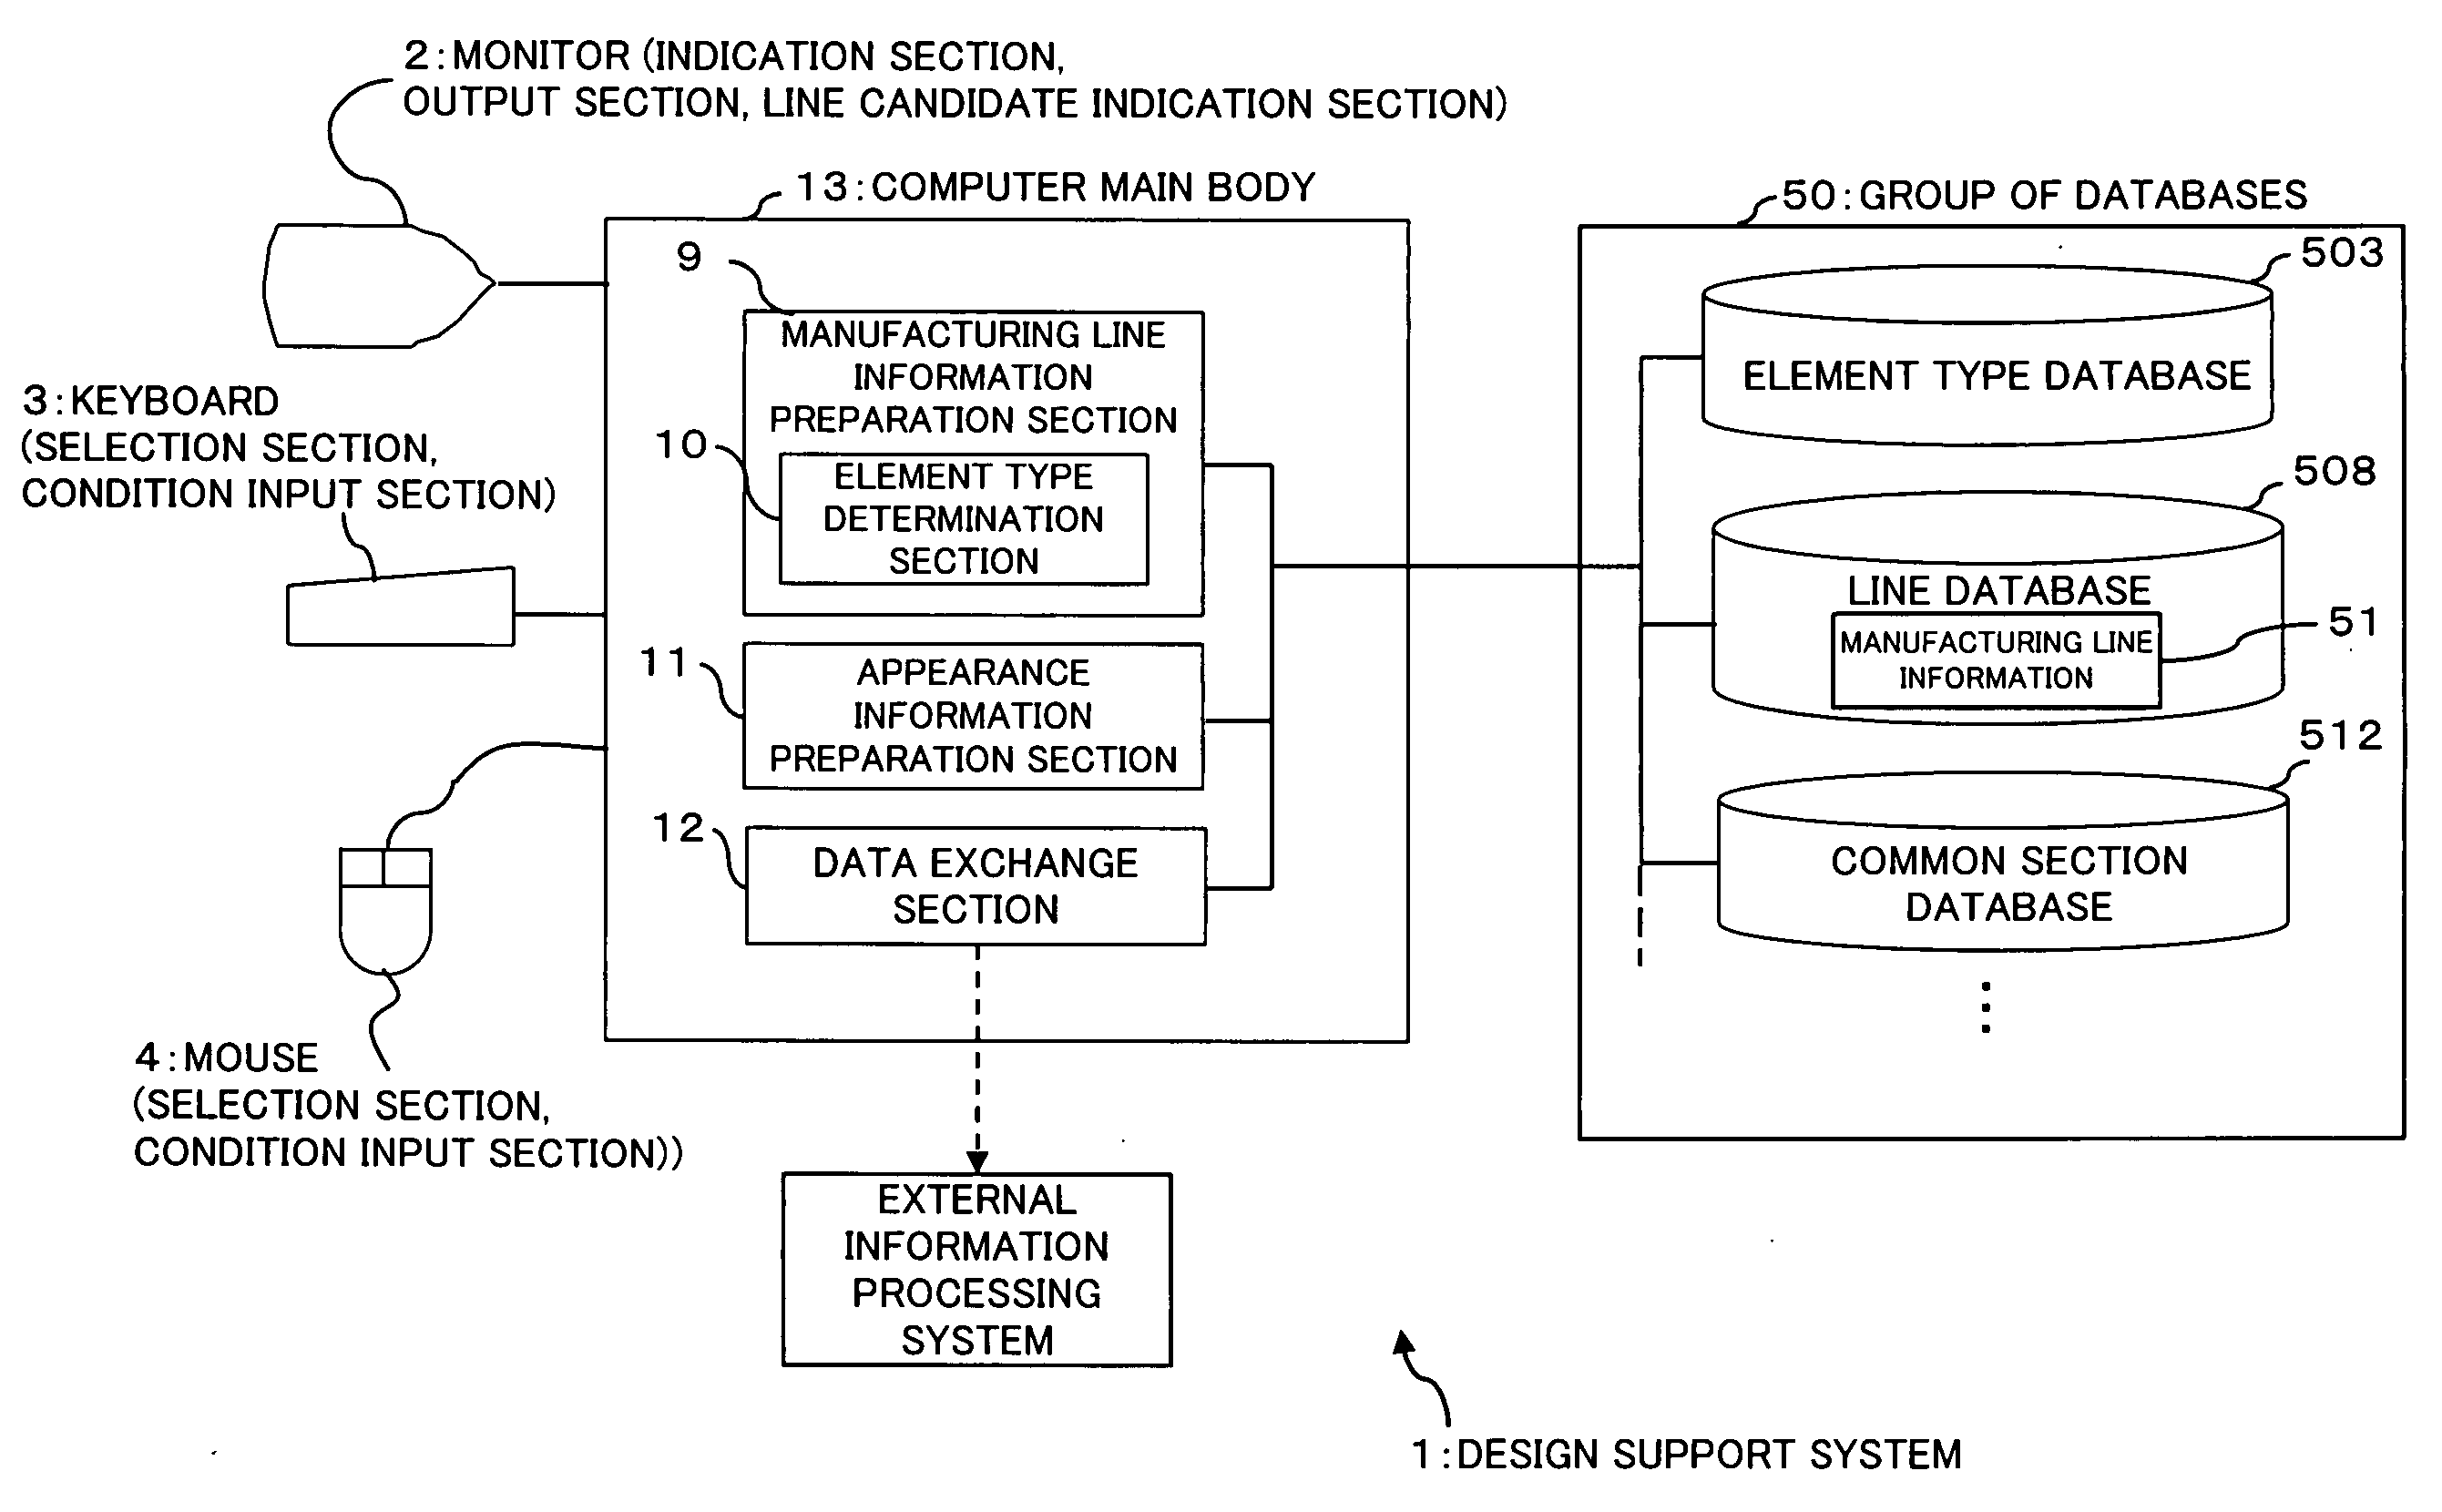 Design support system